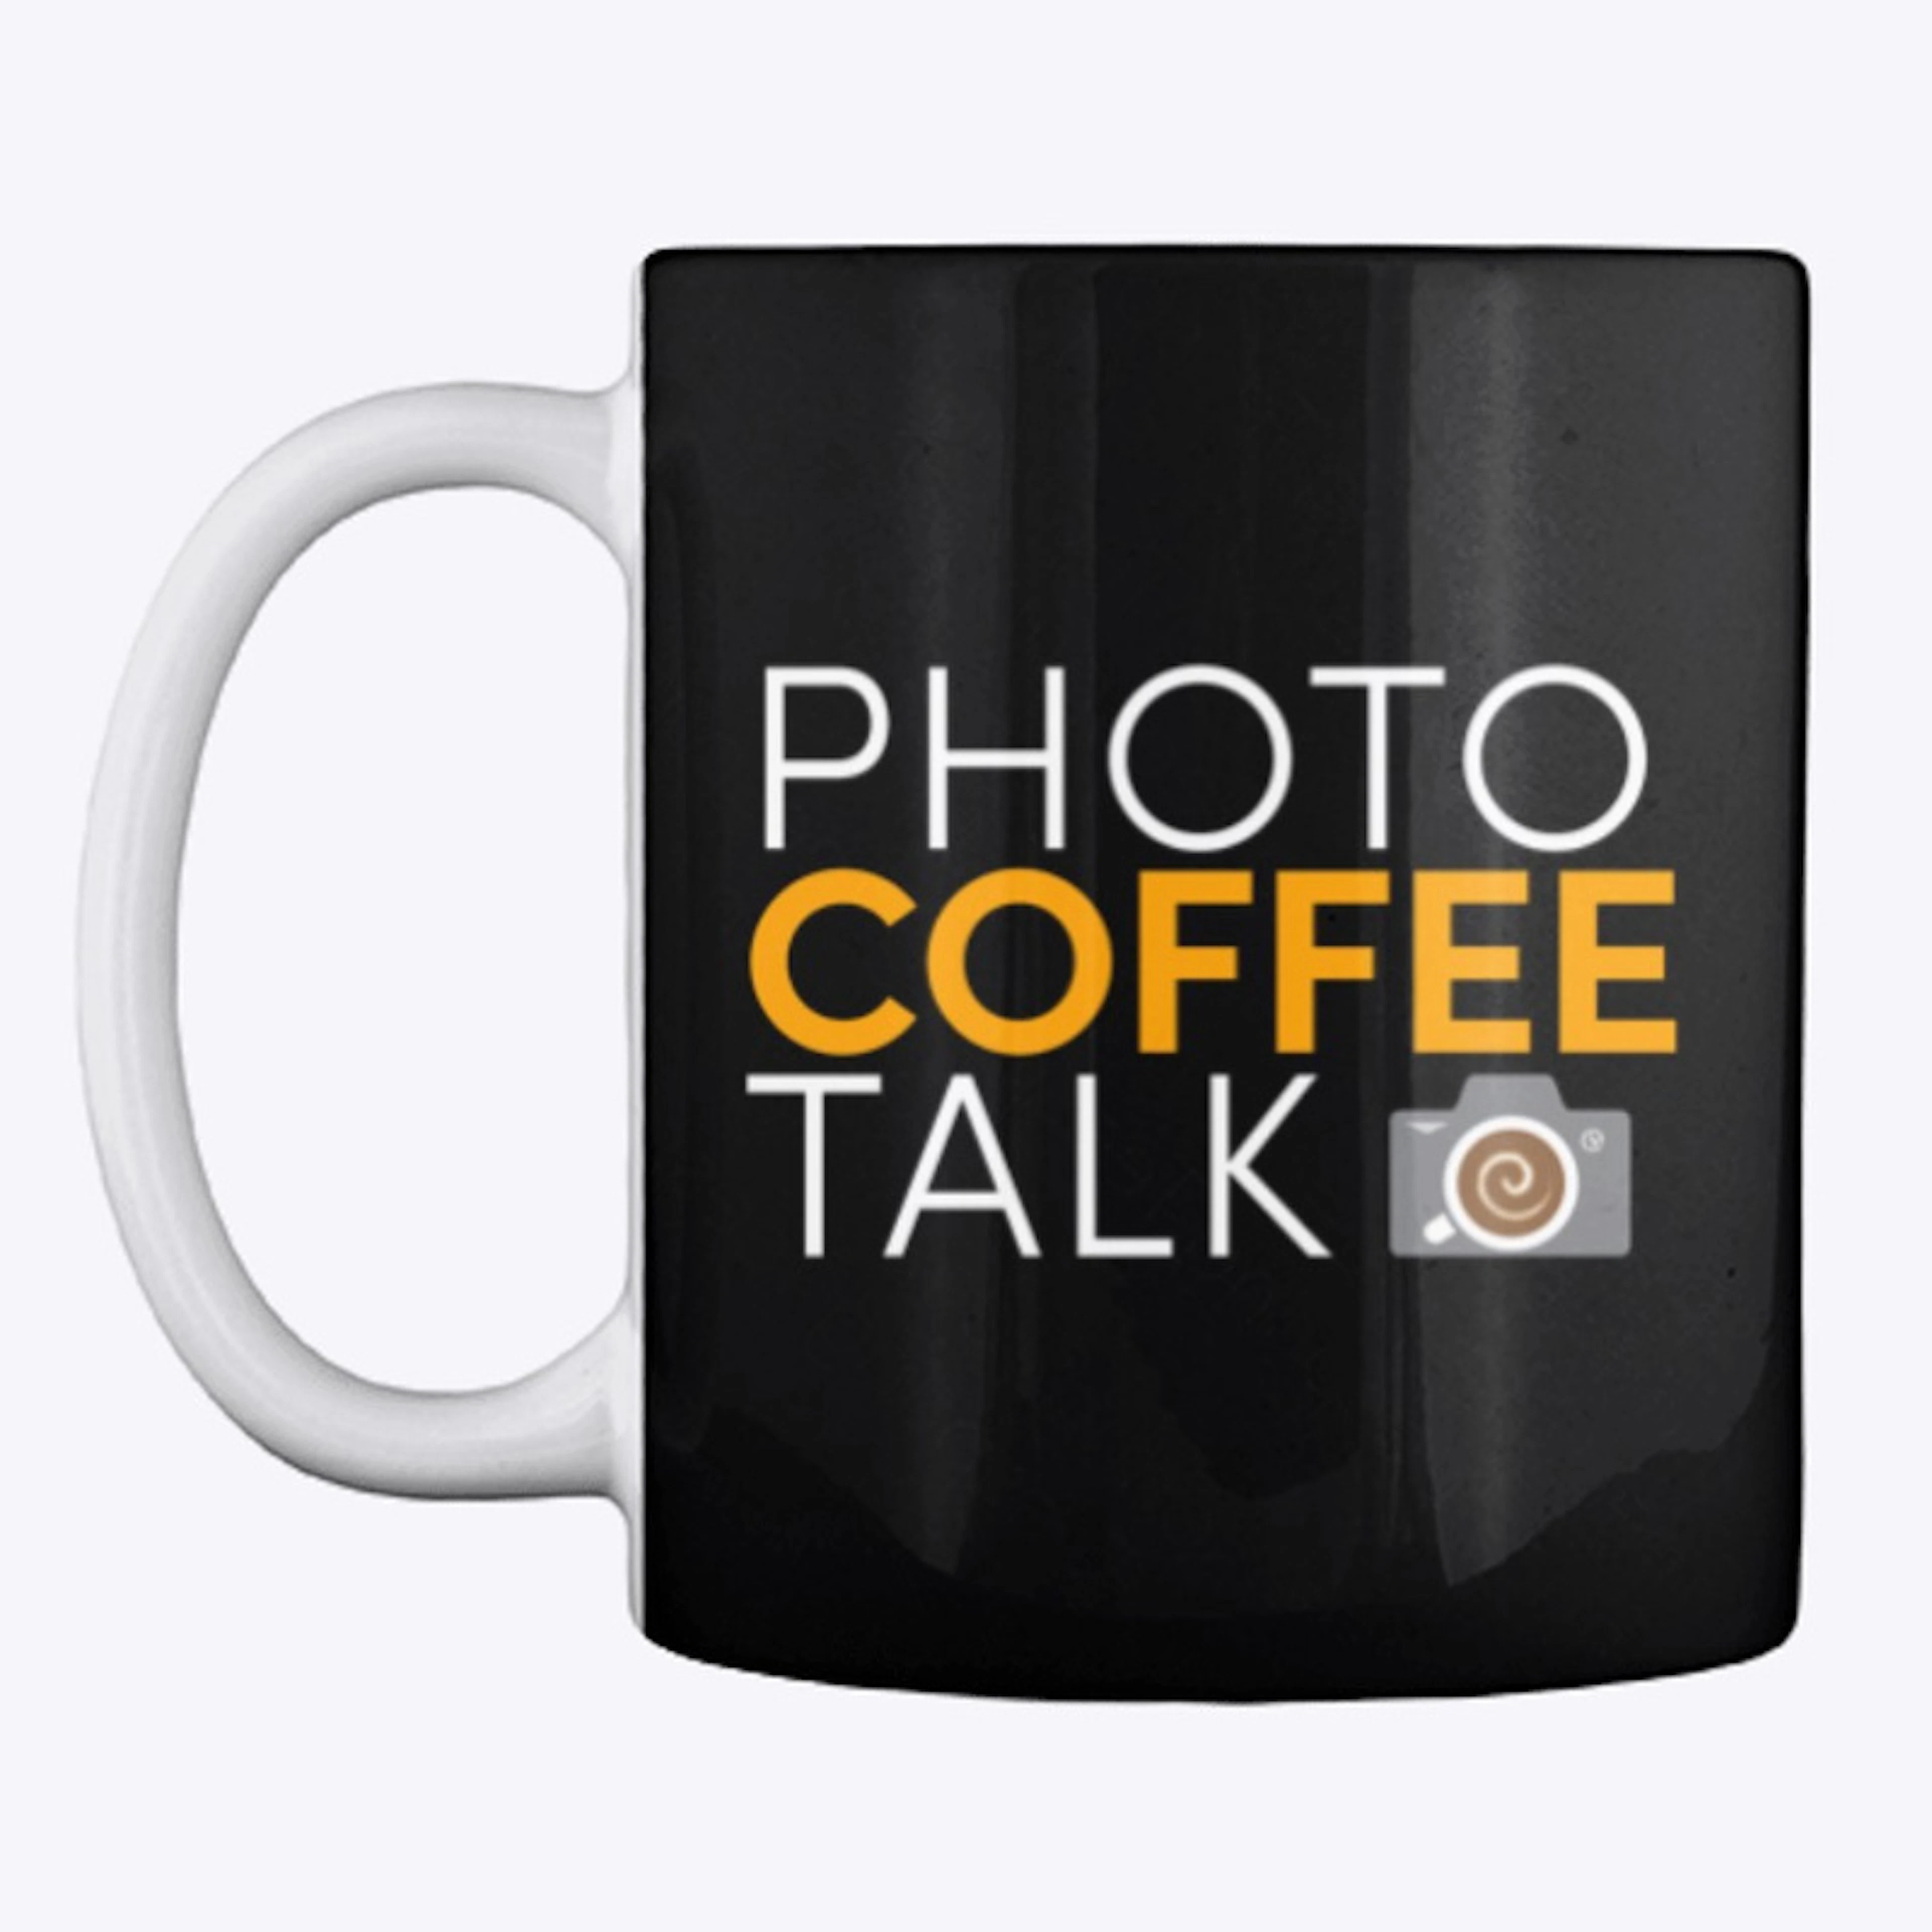 PHOTO COFFEE TALK Text Tee